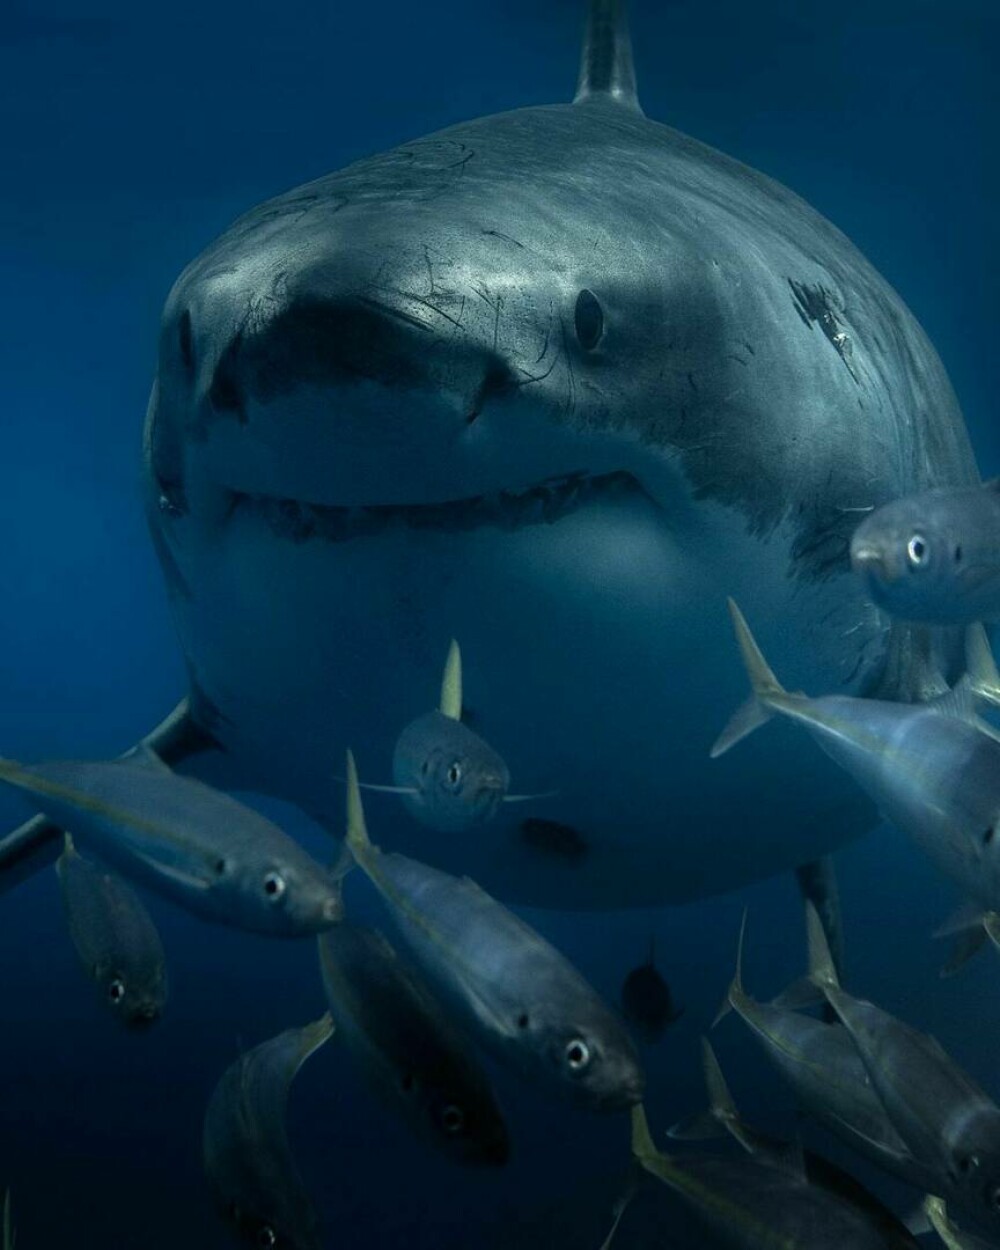 Imagini uimitoare surprinse de supraviețuitorul atacului unui rechin. Fotografiază prădătorii de aproape | GALERIE FOTO - Imaginea 13